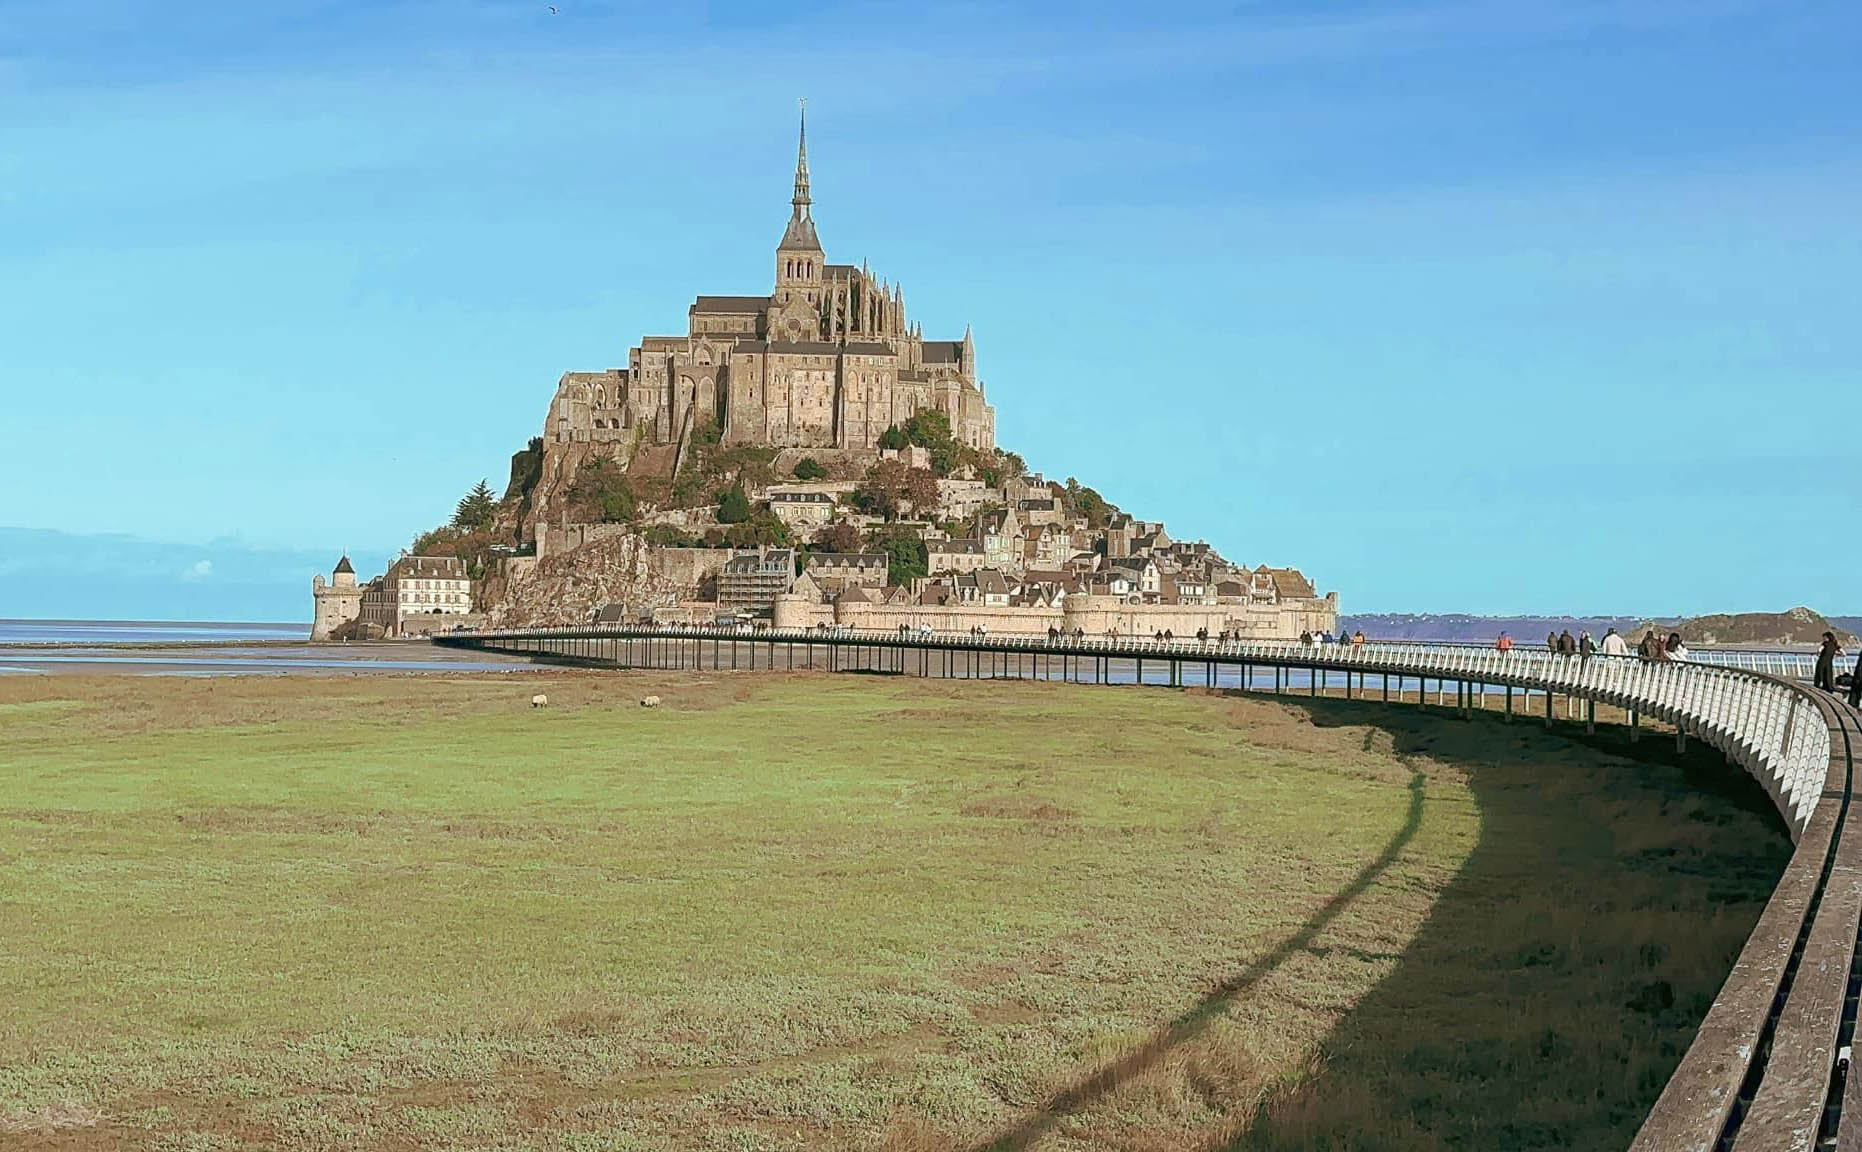 Tu viện cổ kính 1000 năm tuổi nằm giữa biển ở Pháp